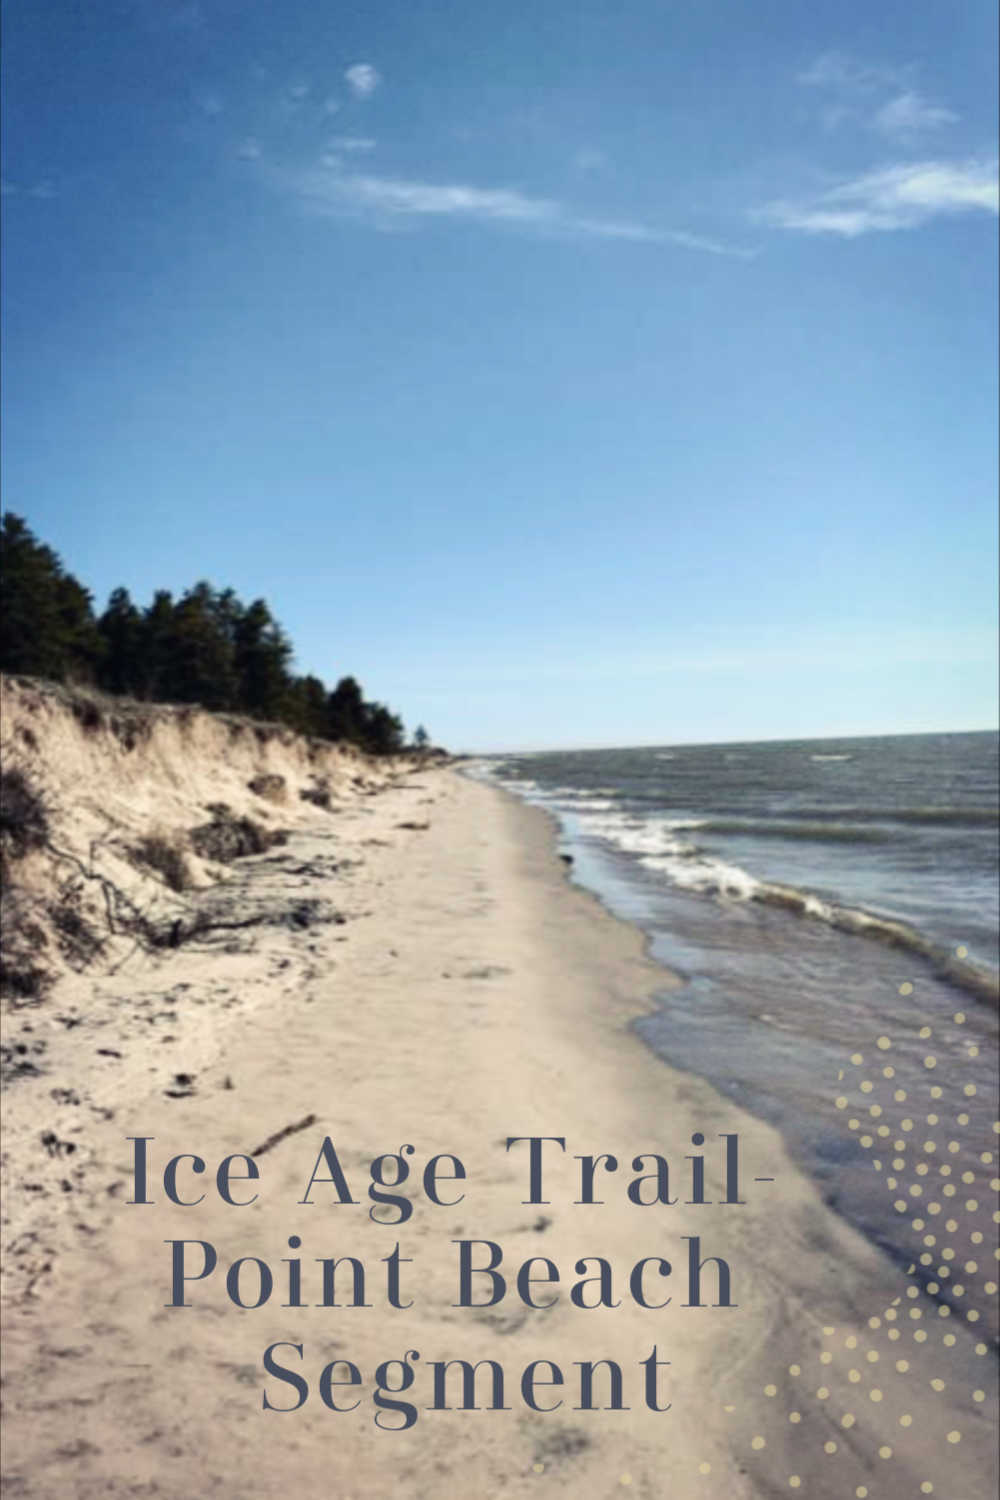 Ice Age Trail - Point Beach Segment